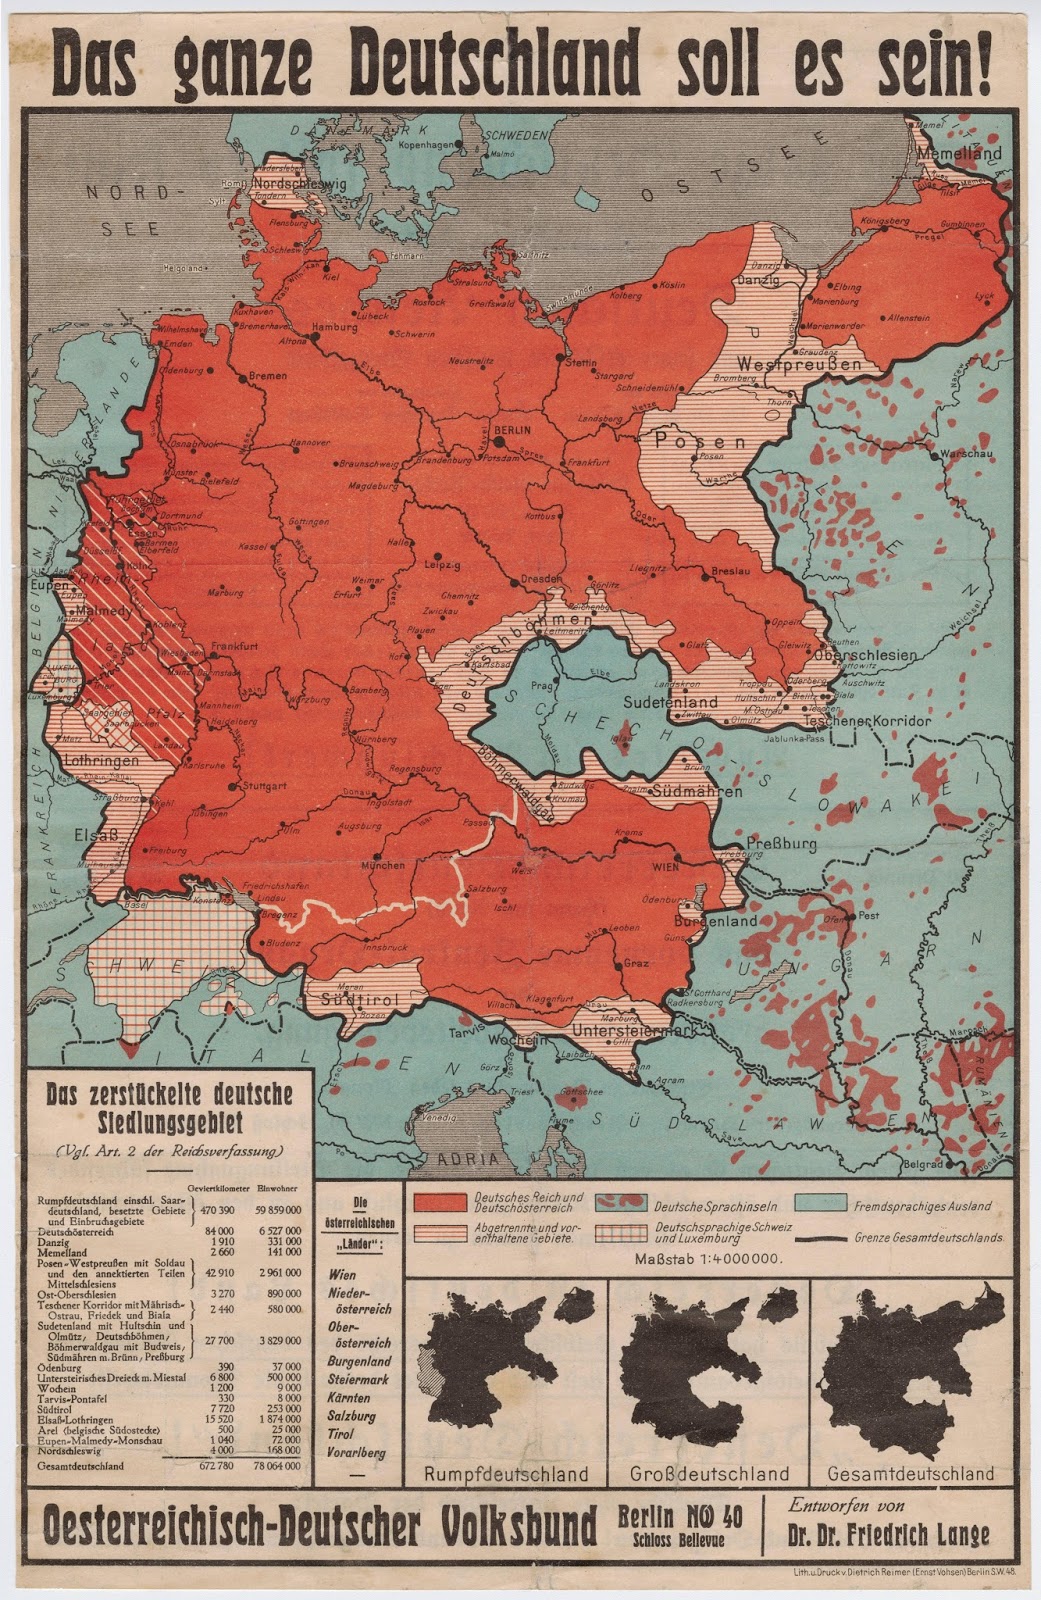 Landkartenblog: "Das ganze Deutschland soll es sein" - Propaganda von